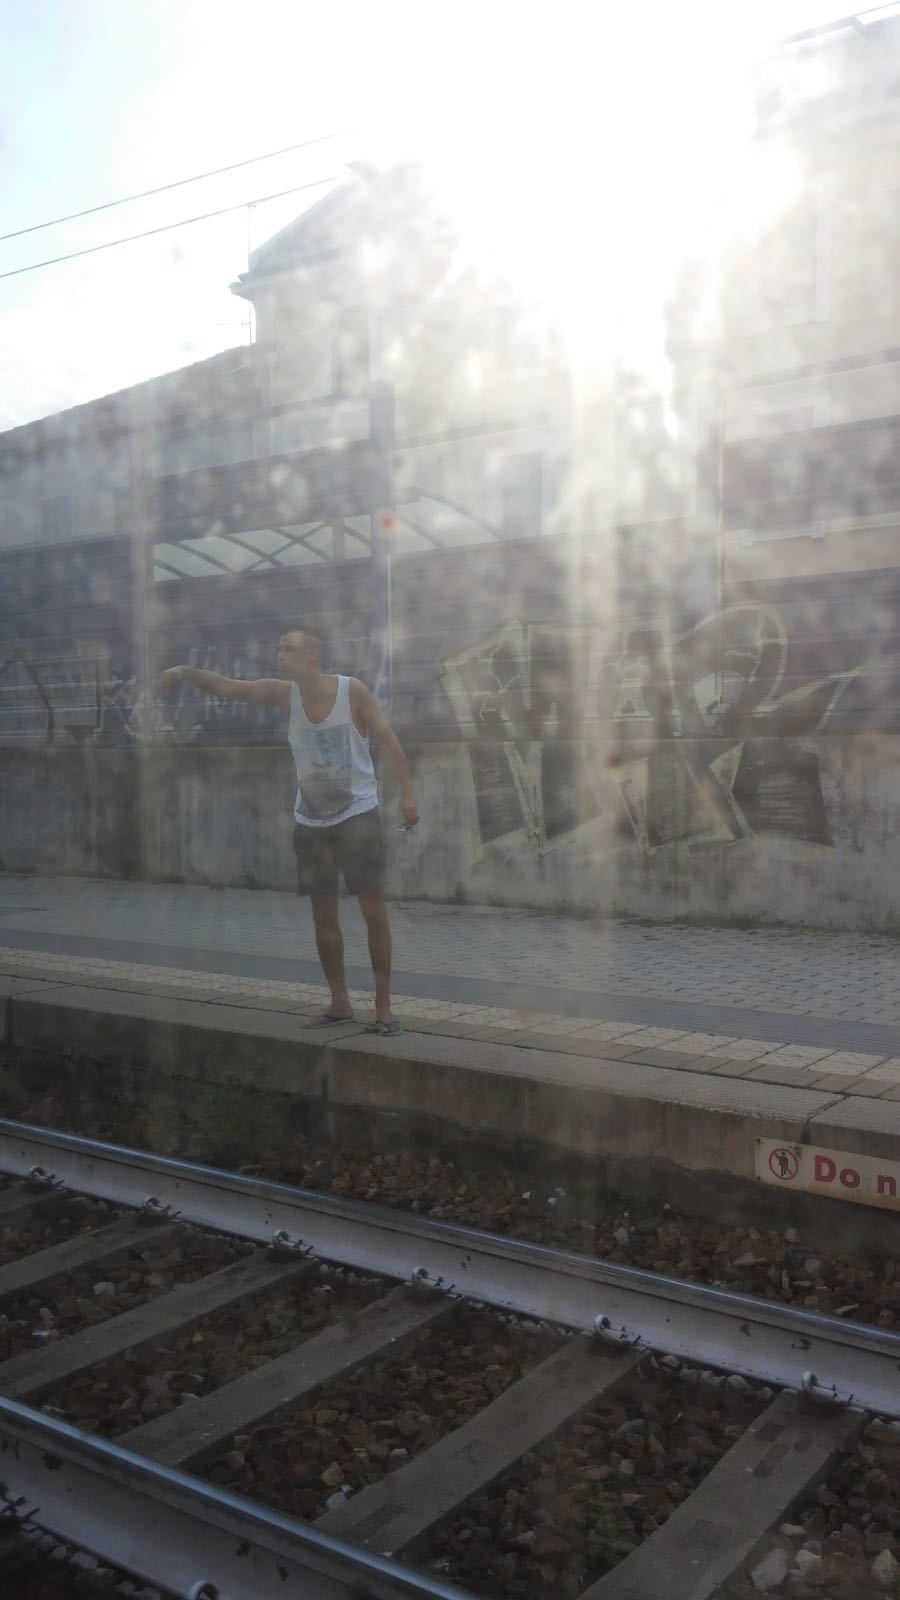 Carnate stazione nordafricani cacciati dal treno lanciano sassi contro finestrini